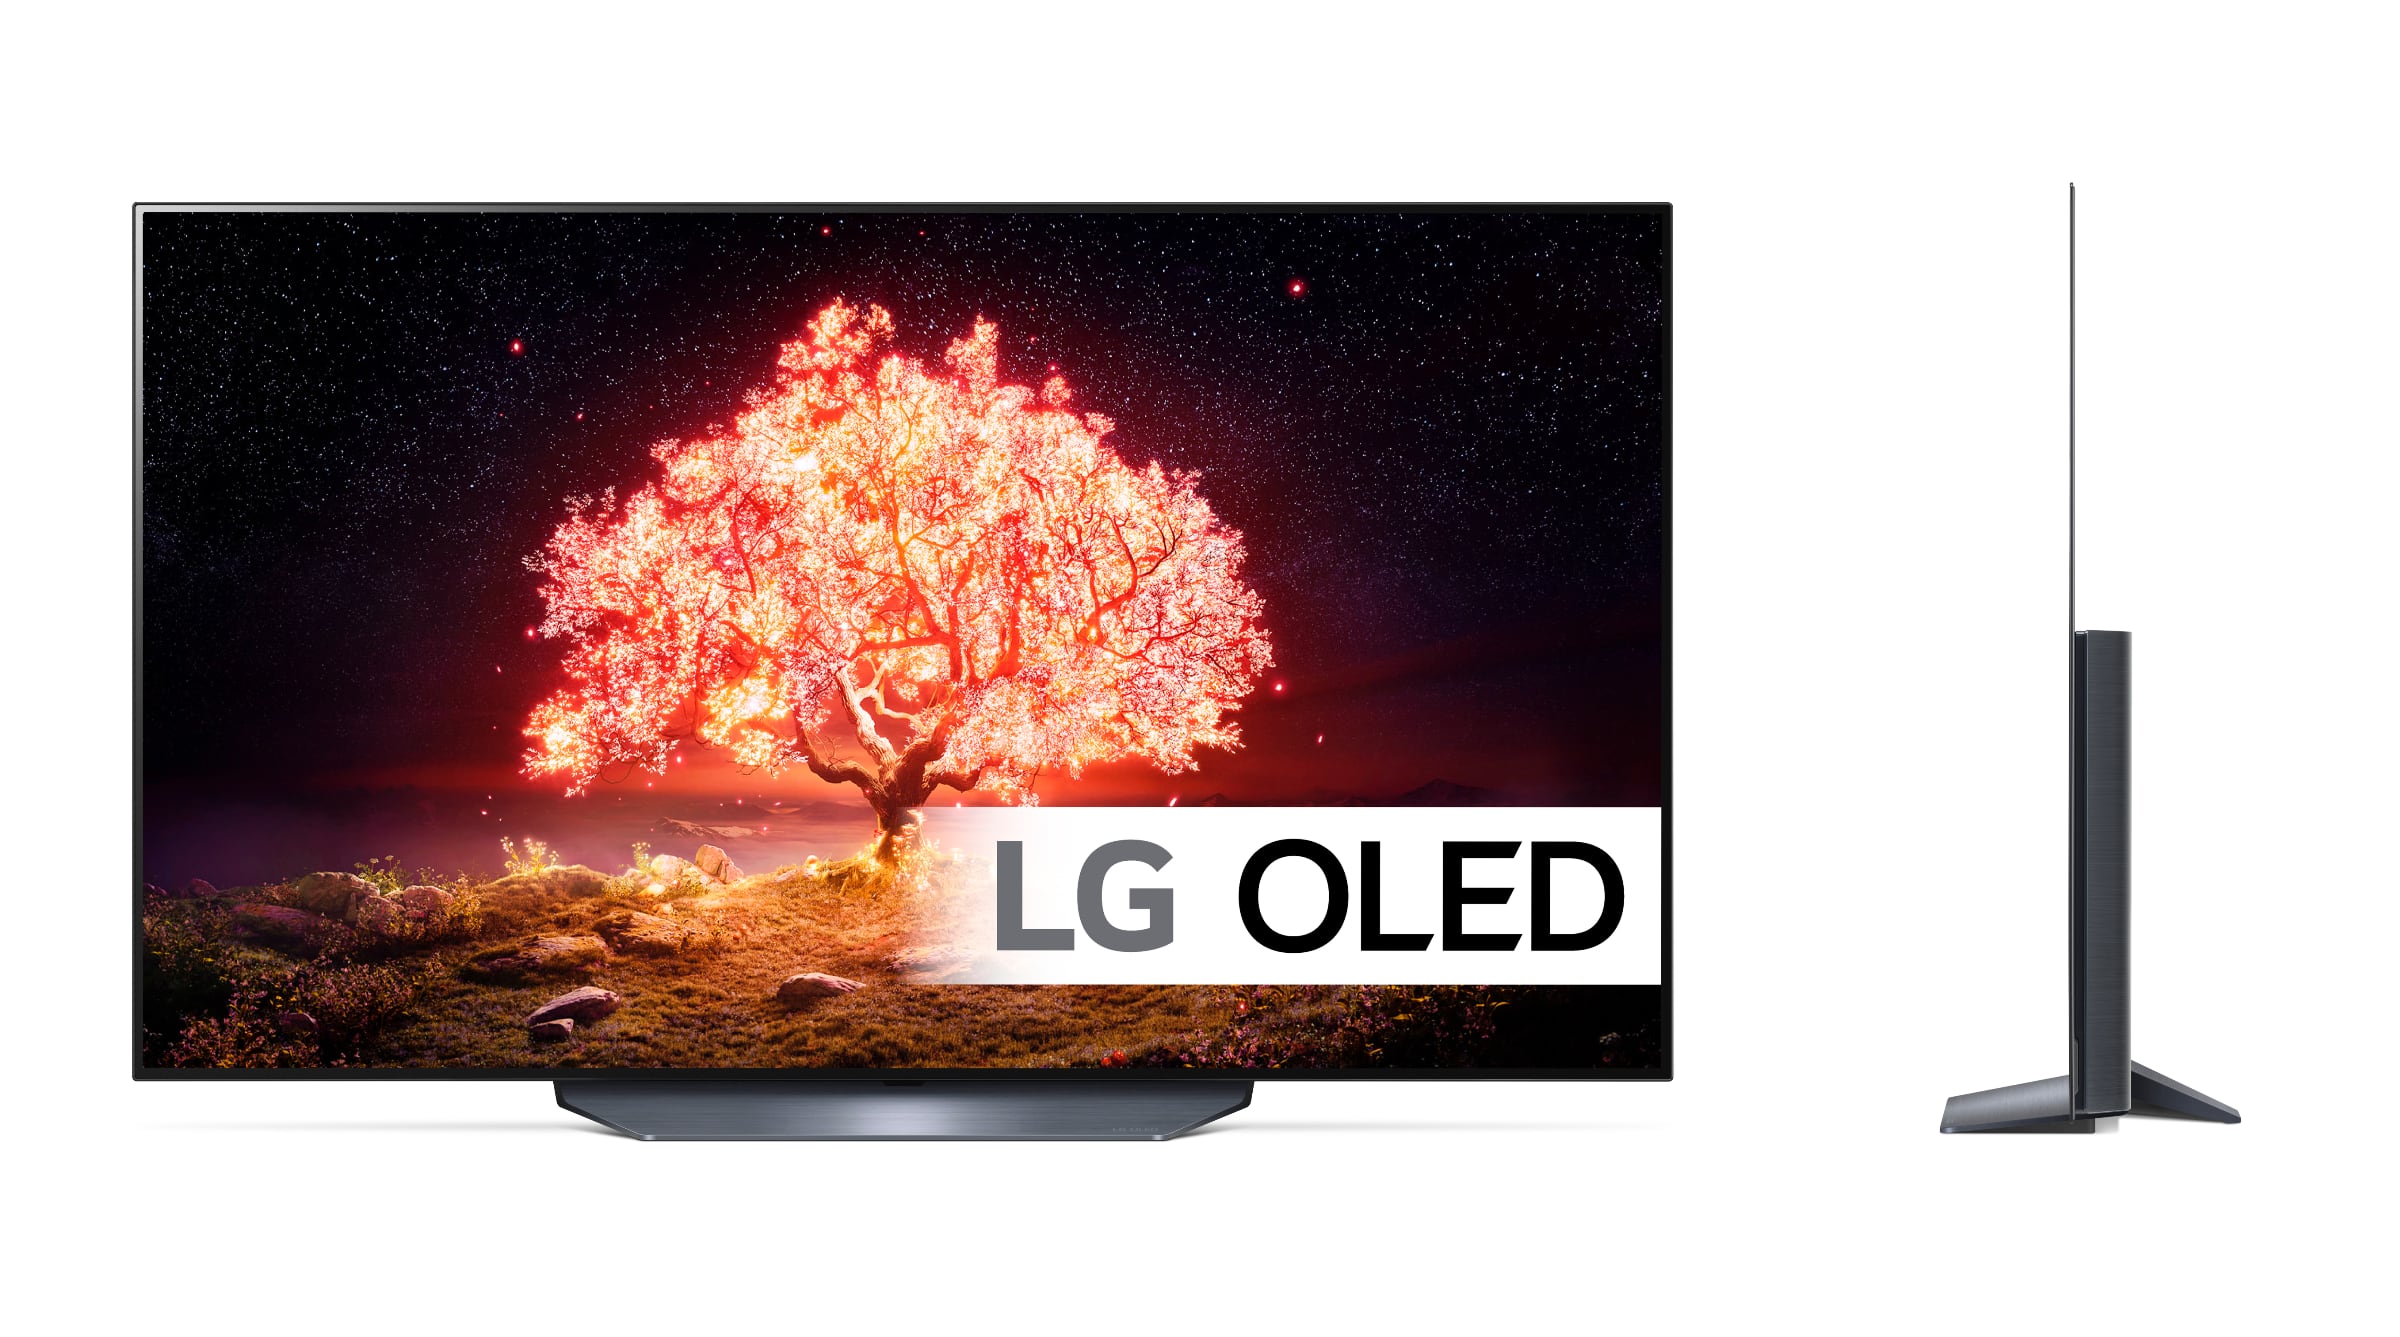 snorkel At øge Margaret Mitchell Opdateret: Danske priser på LG 2021 OLED TV - G1, C1, B1 og A1 -  FlatpanelsDK